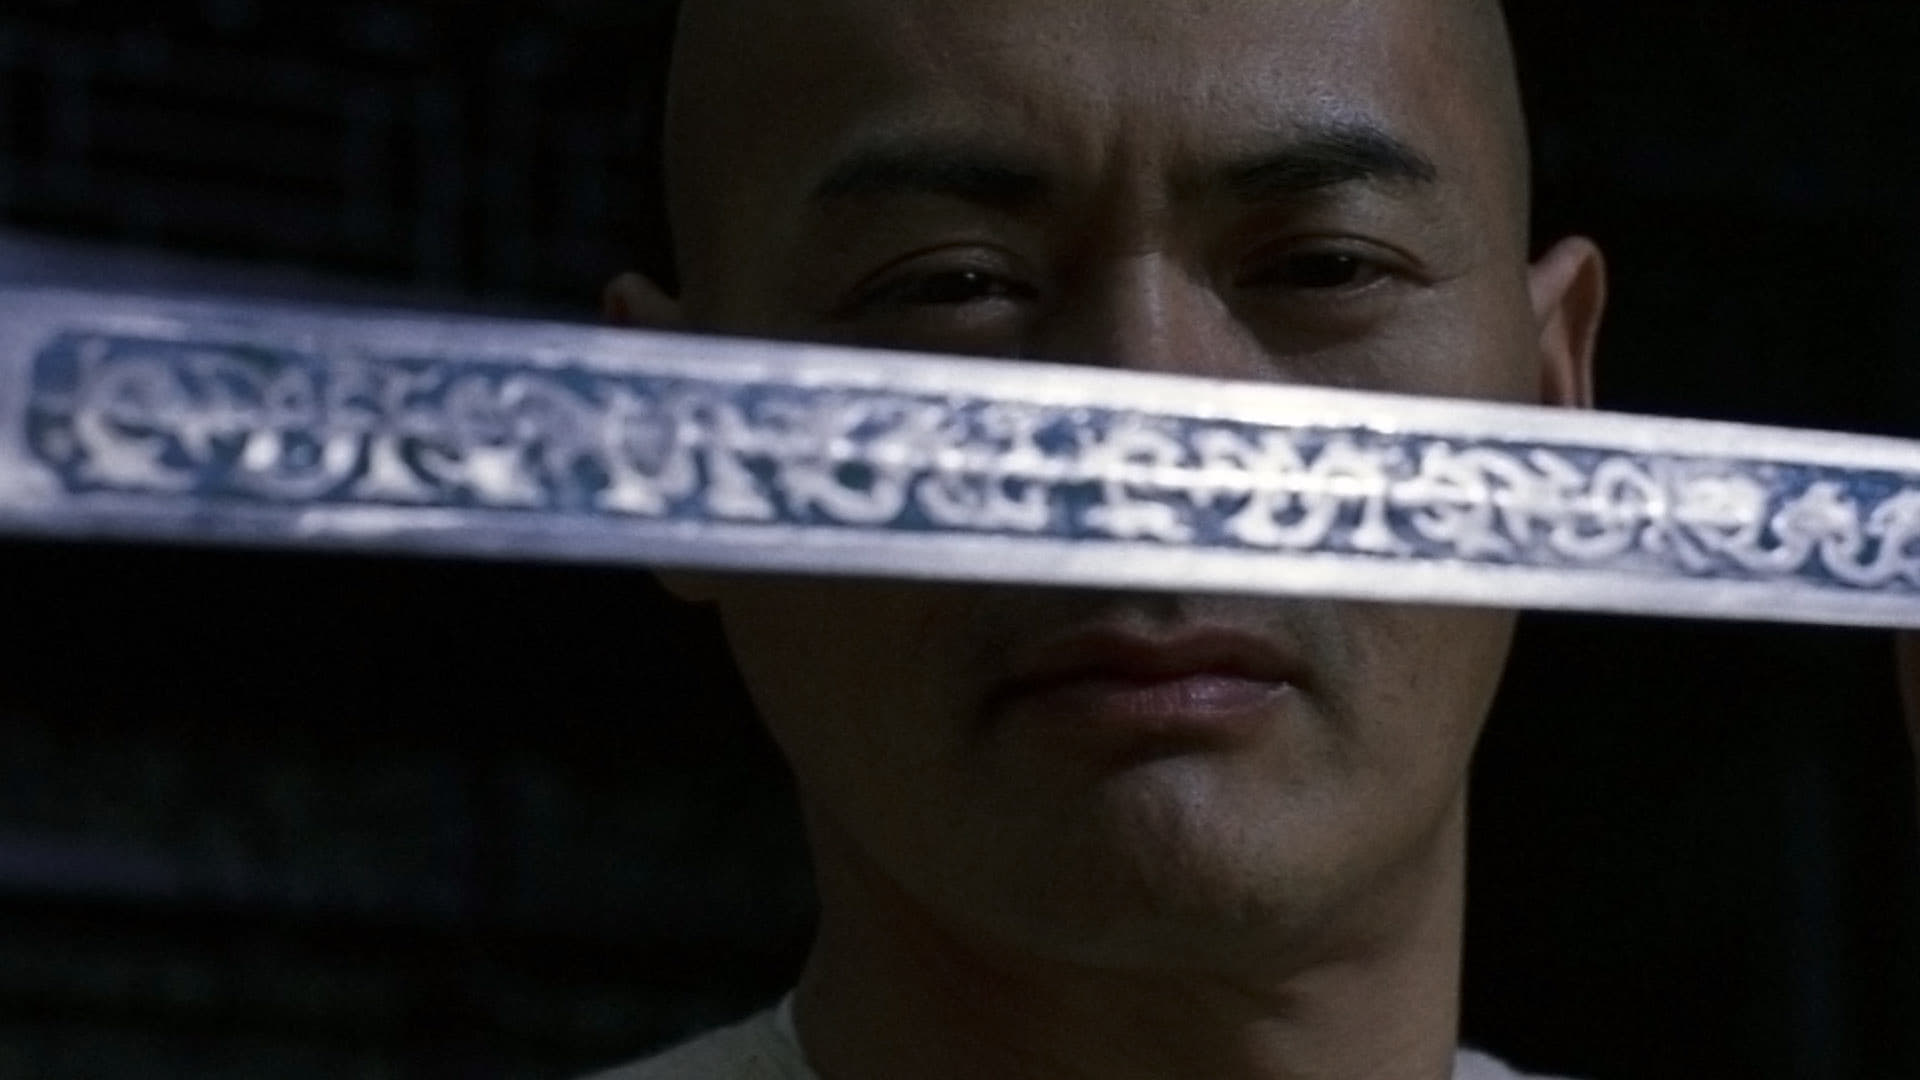 卧虎藏龍 (2000)